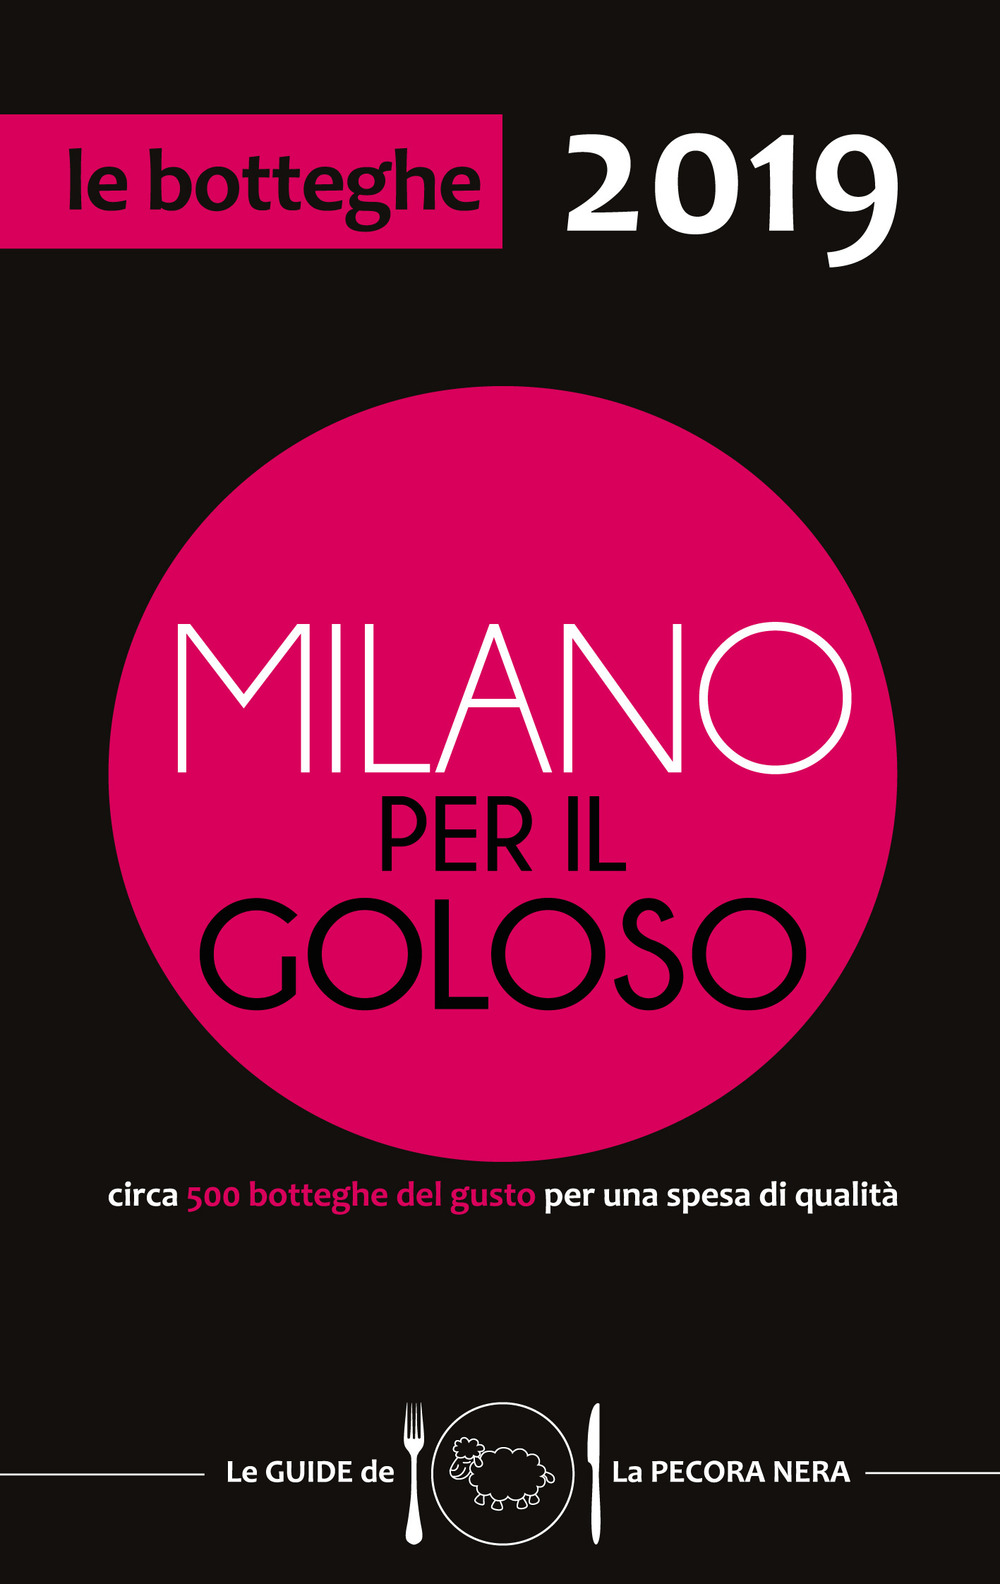 Milano per il goloso 2019. Circa 500 botteghe del gusto per una spesa di qualità